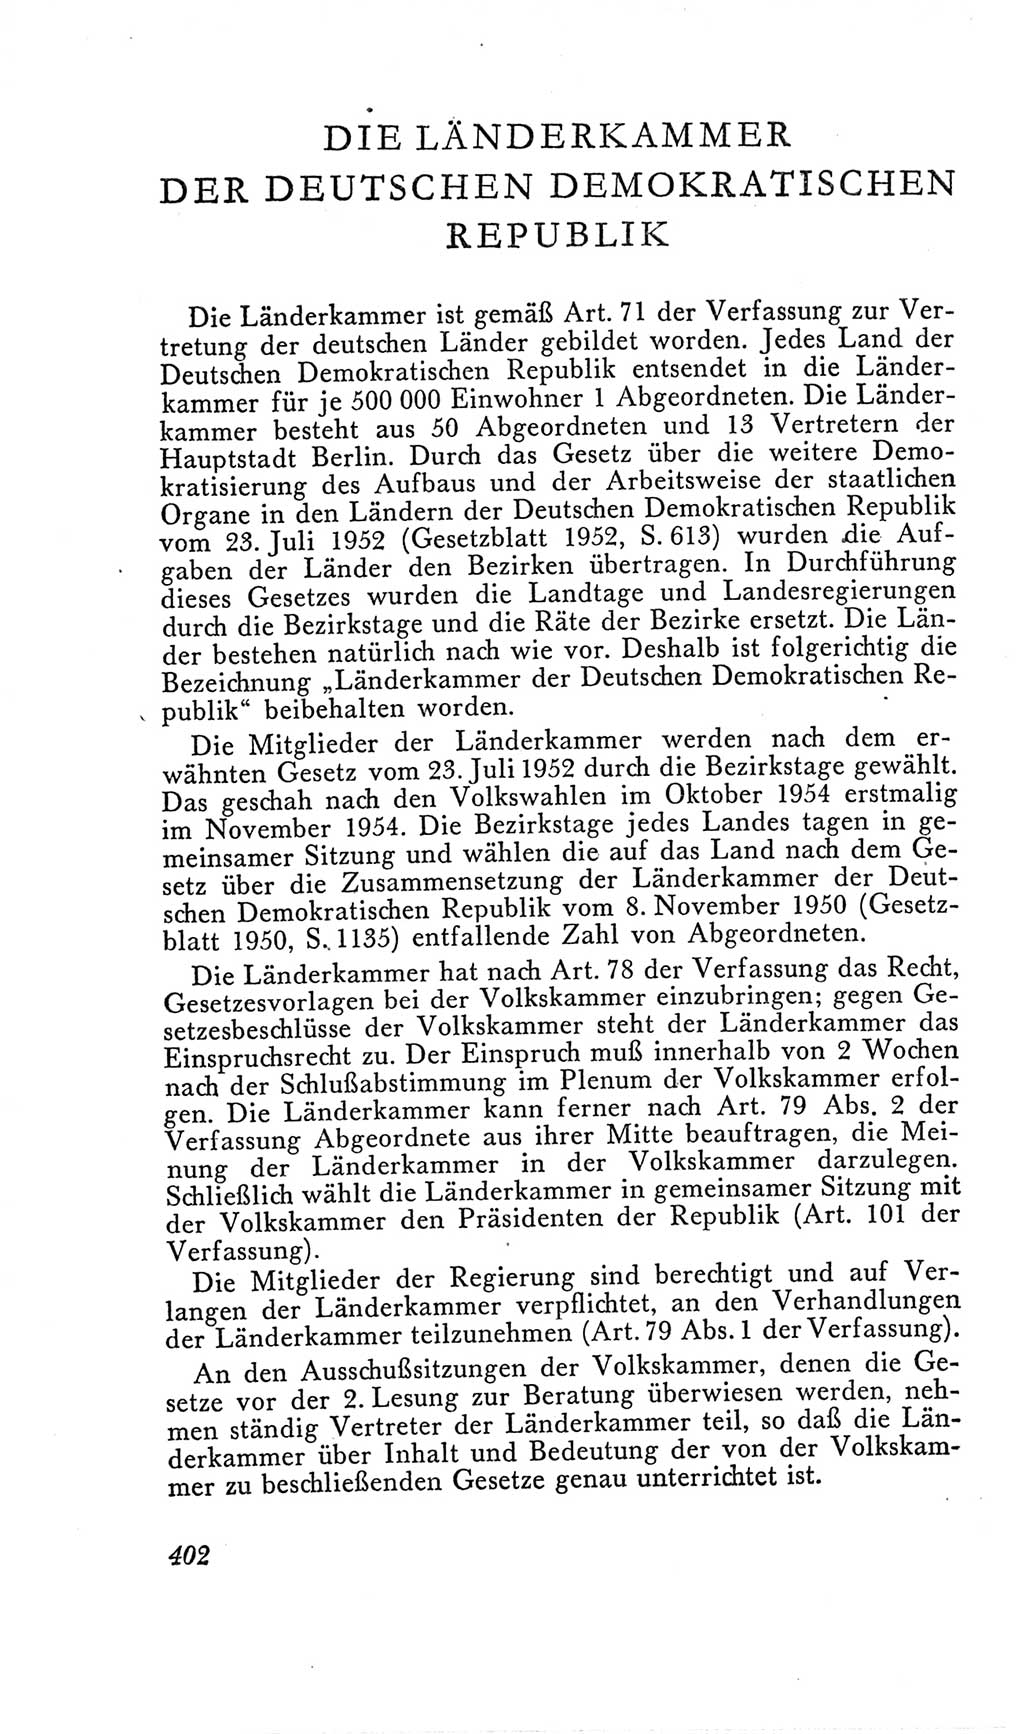 Handbuch der Volkskammer (VK) der Deutschen Demokratischen Republik (DDR), 2. Wahlperiode 1954-1958, Seite 402 (Hdb. VK. DDR, 2. WP. 1954-1958, S. 402)